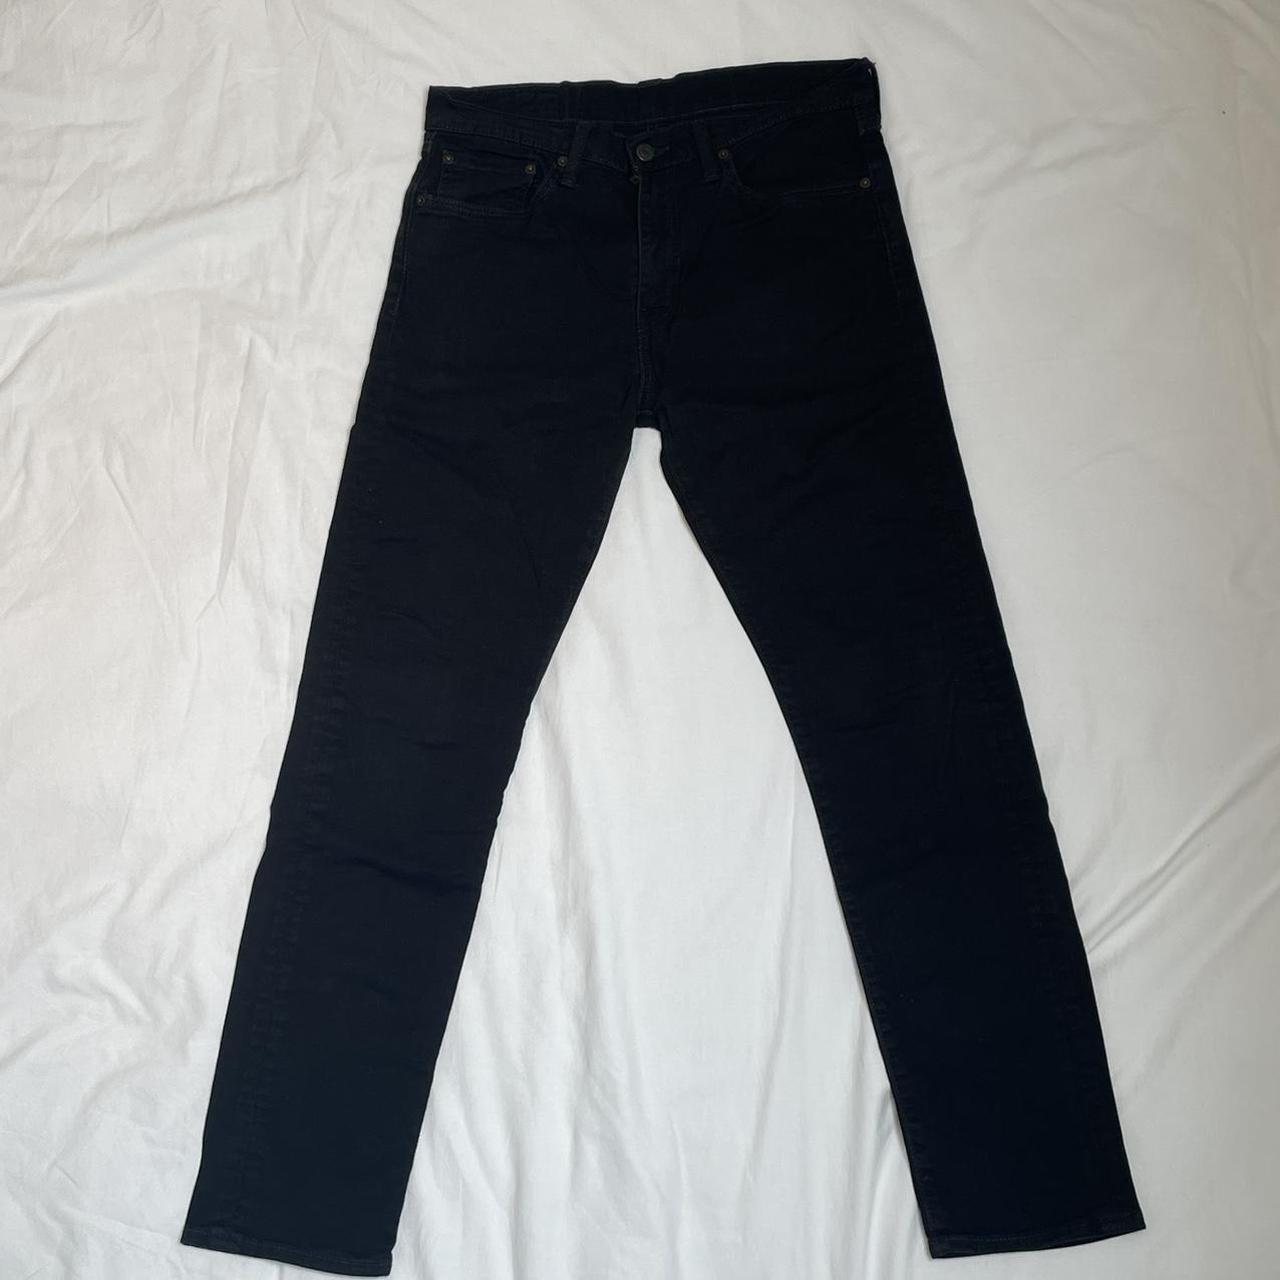 Levi’s 508 Vintage jeans. Size W32 L32 Colour... - Depop